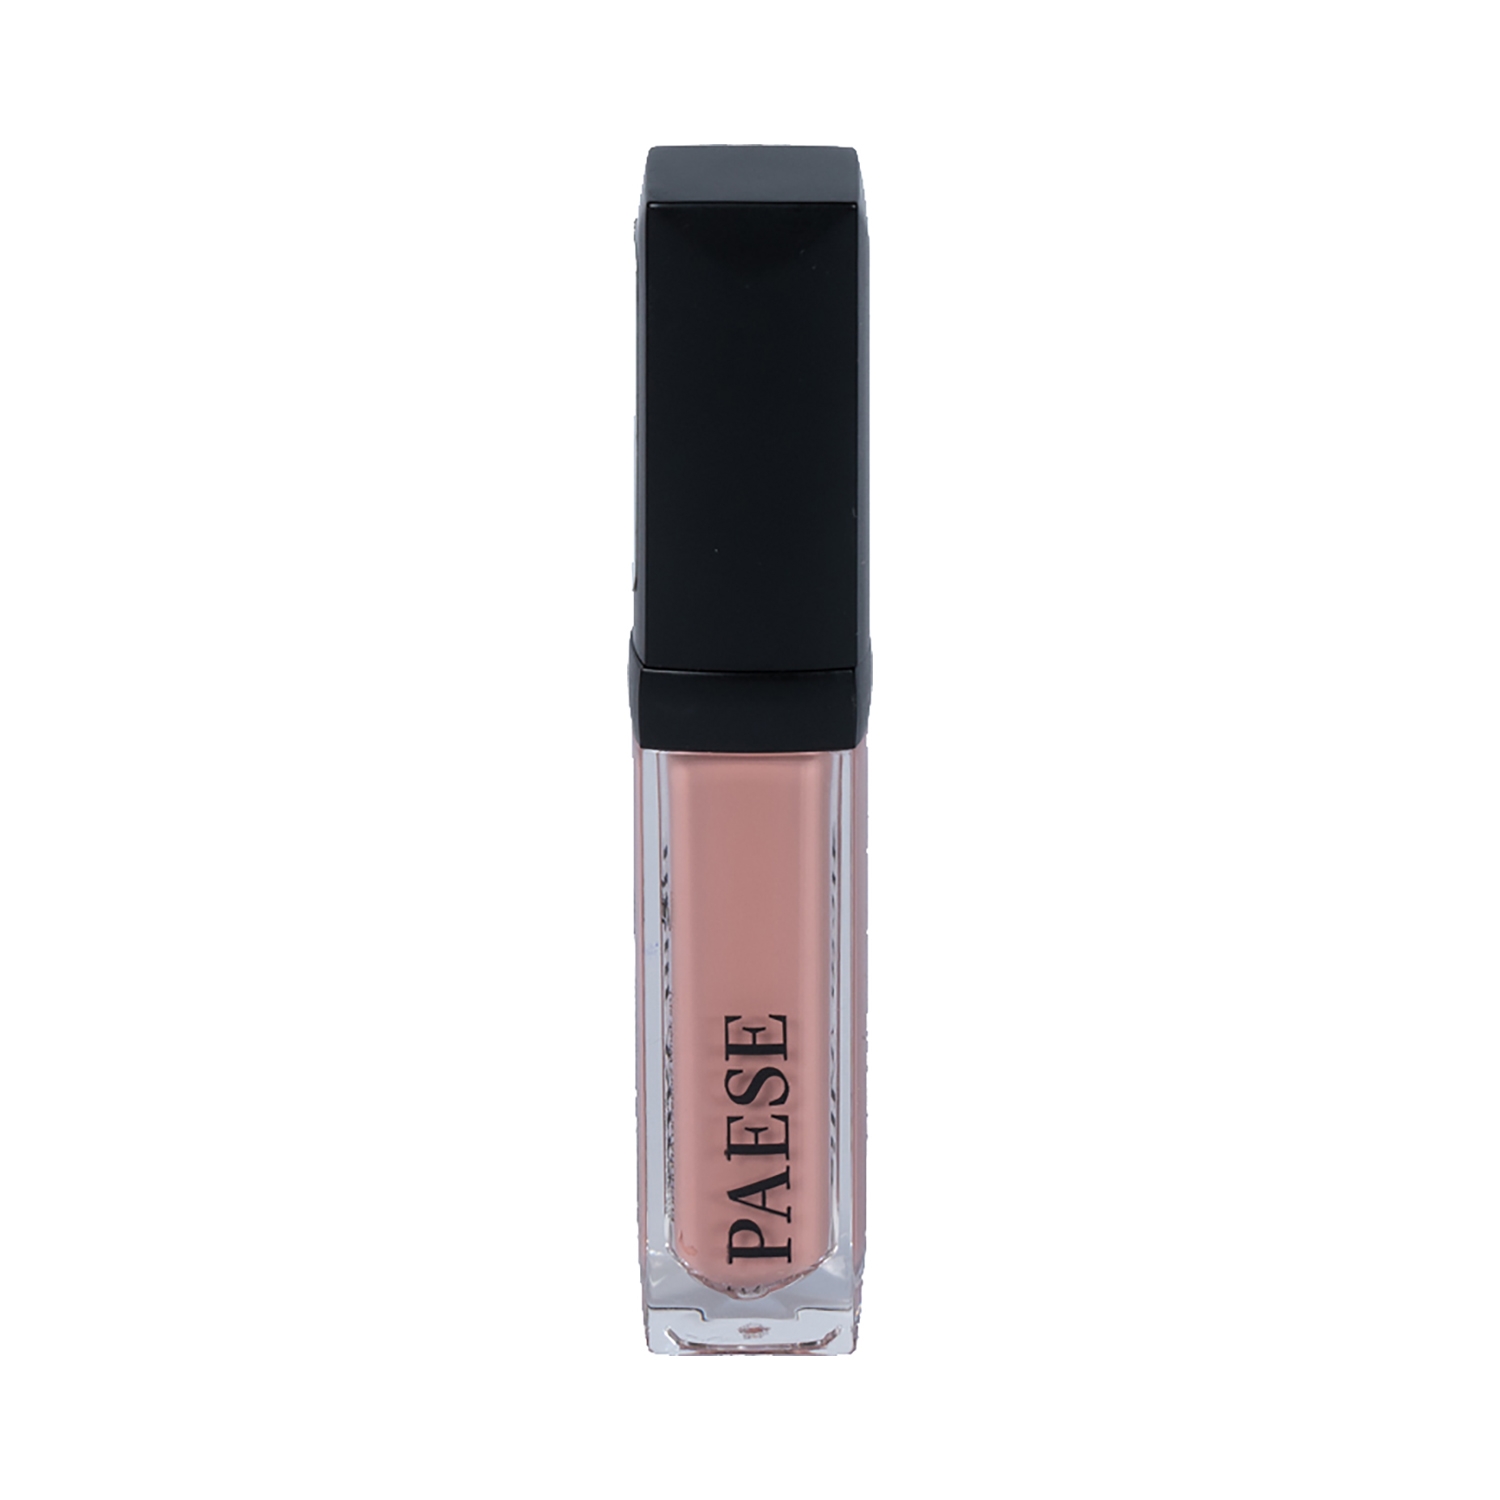 Paese Cosmetics | Paese Cosmetics Silky Matt Liquid Lipstick - 711 Shade (6ml)